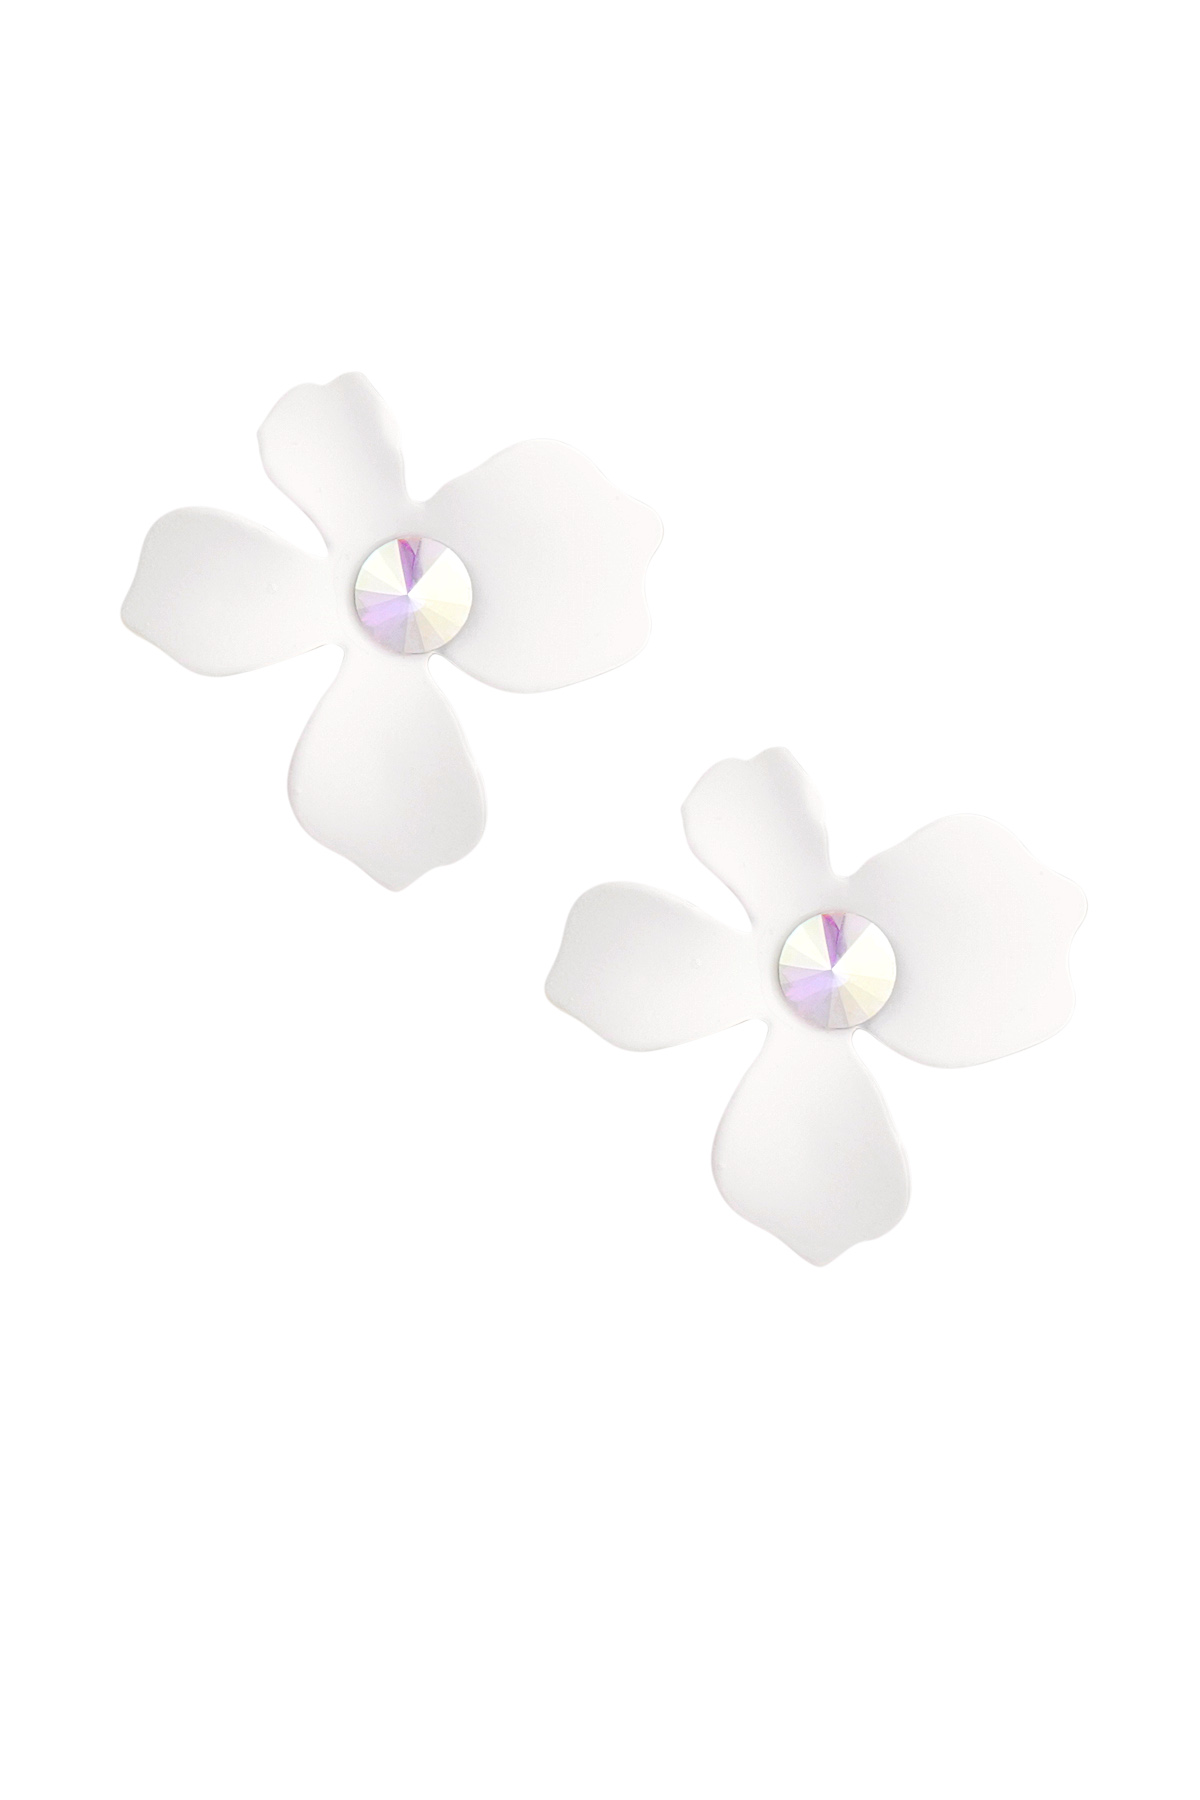 Sommerblumen Ohrringe - weiß h5 